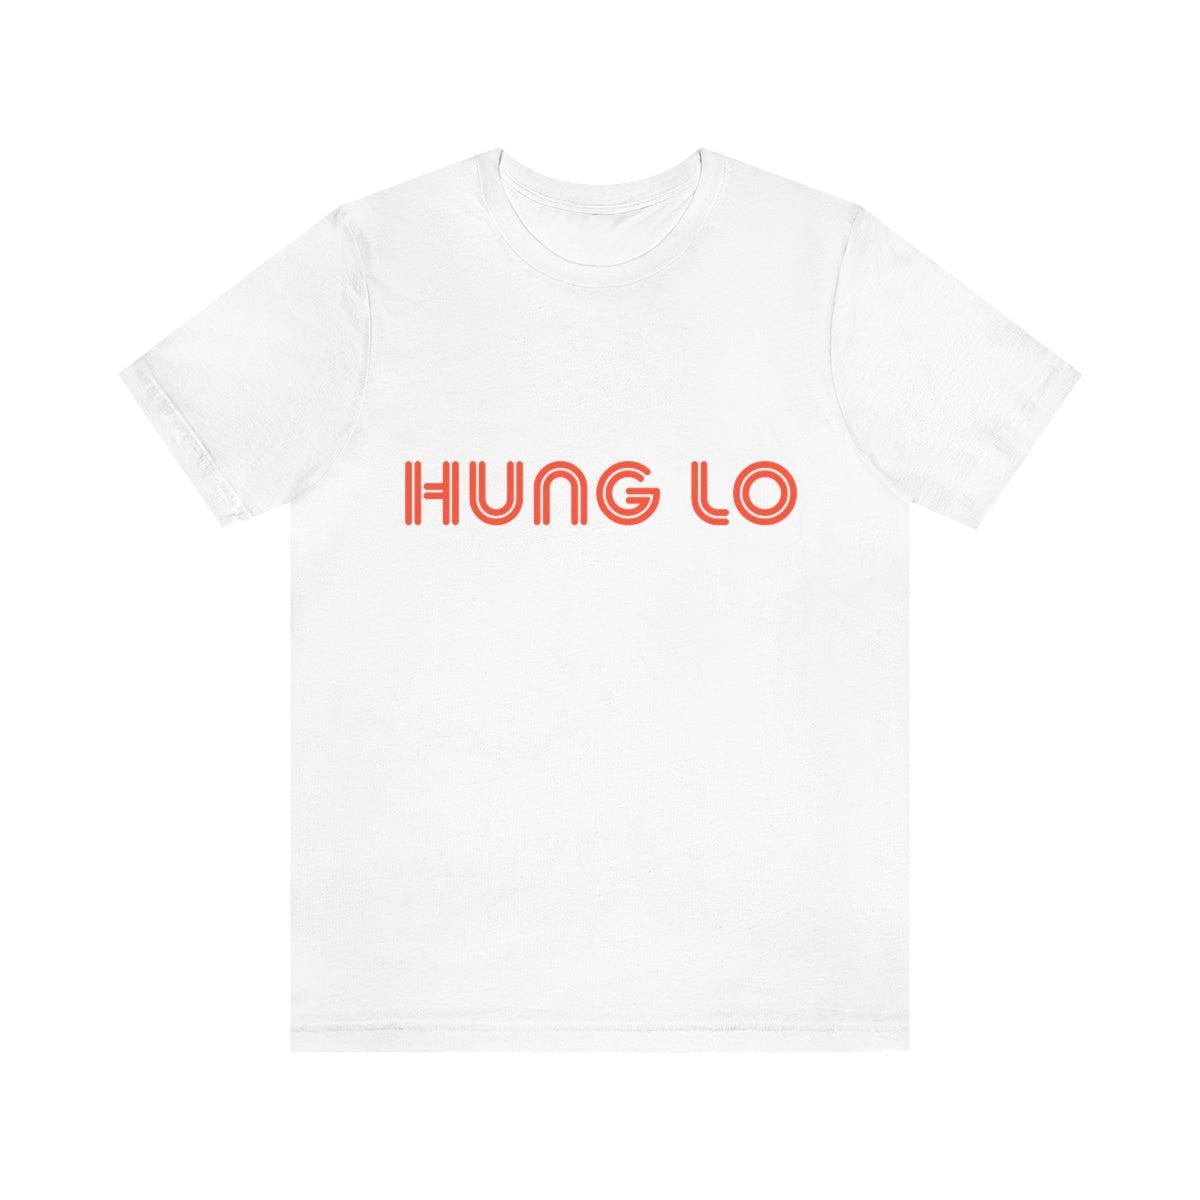 Hung Lo T-Shirt